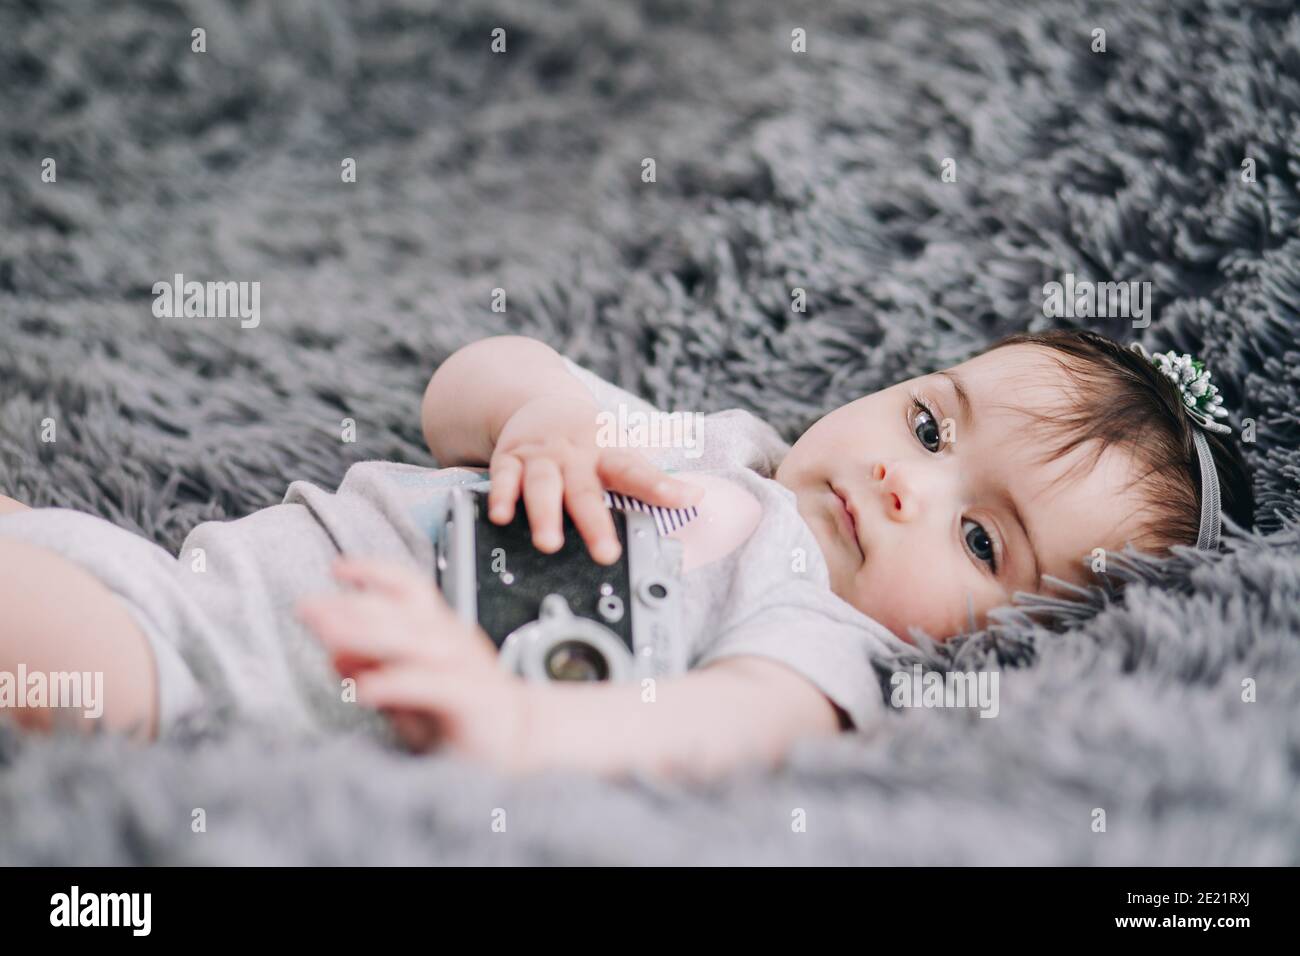 Gros plan de l'adorable et adorable bébé tenant un appareil photo reflex vintage Banque D'Images